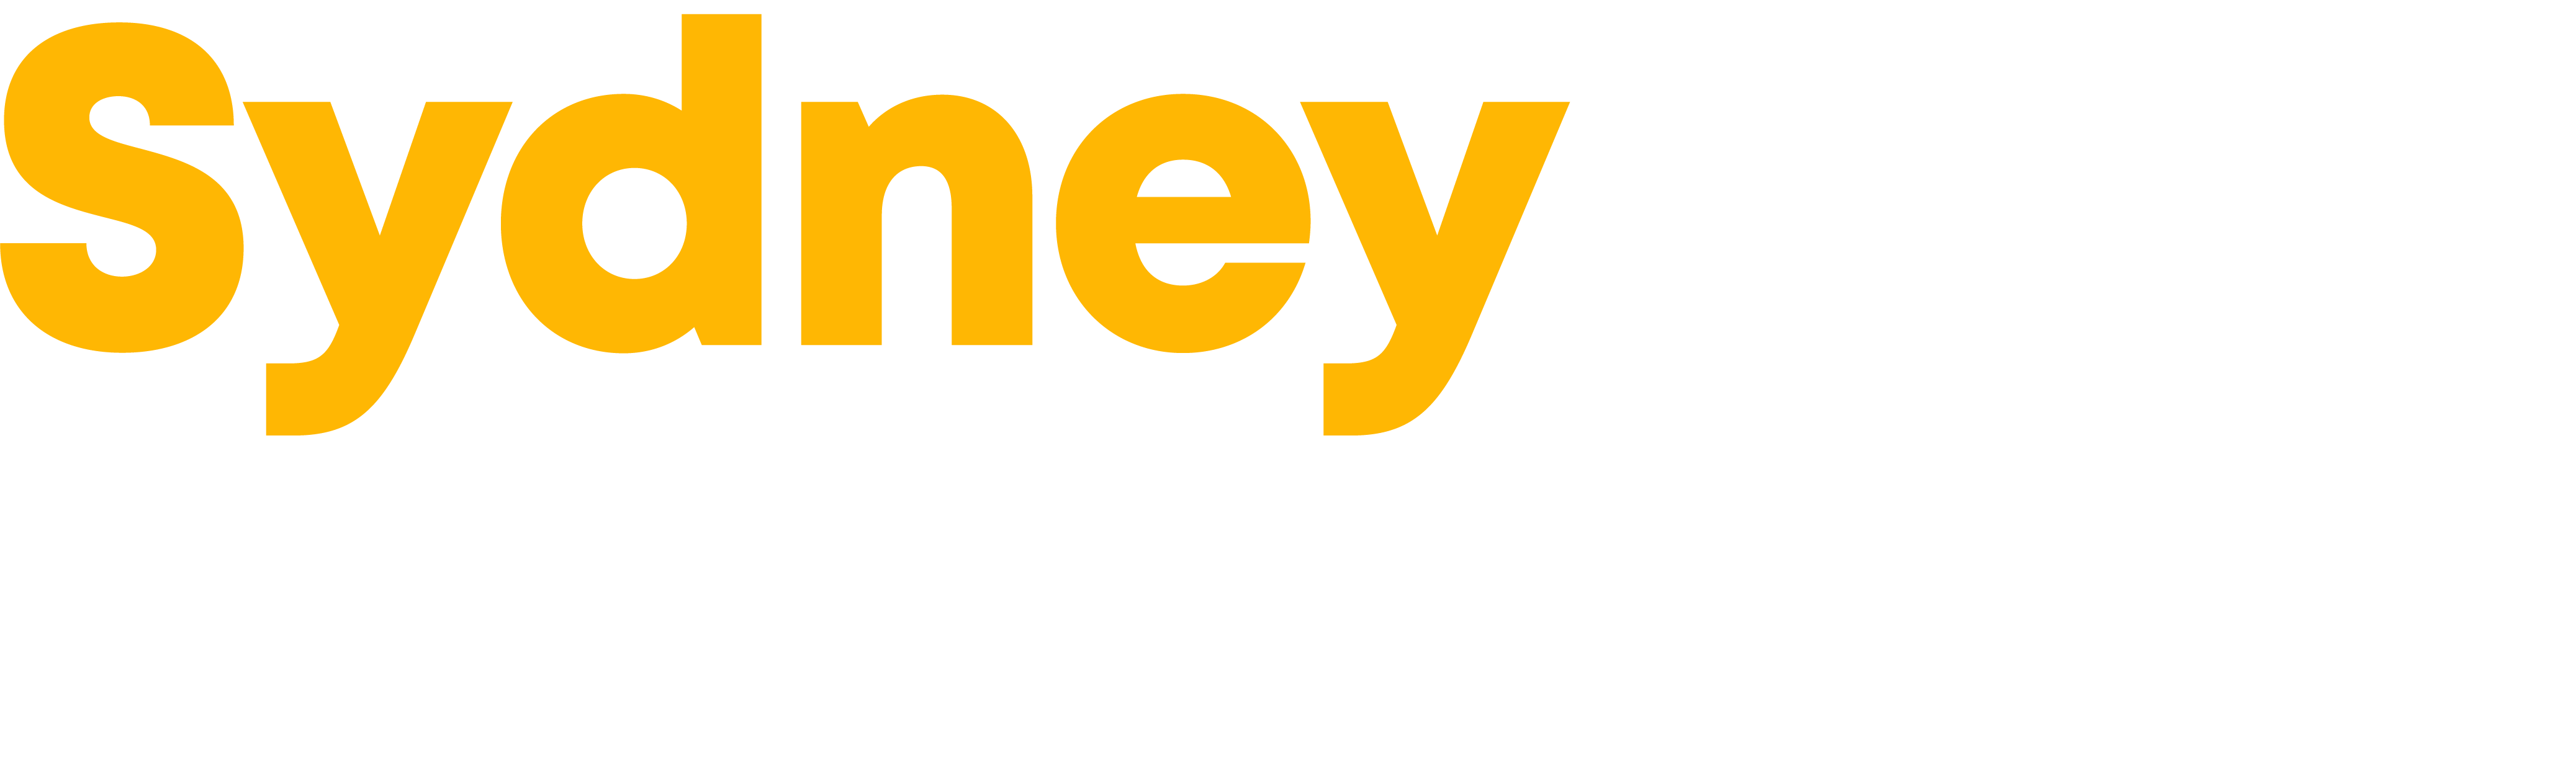 Sydney Fixer & Beyond